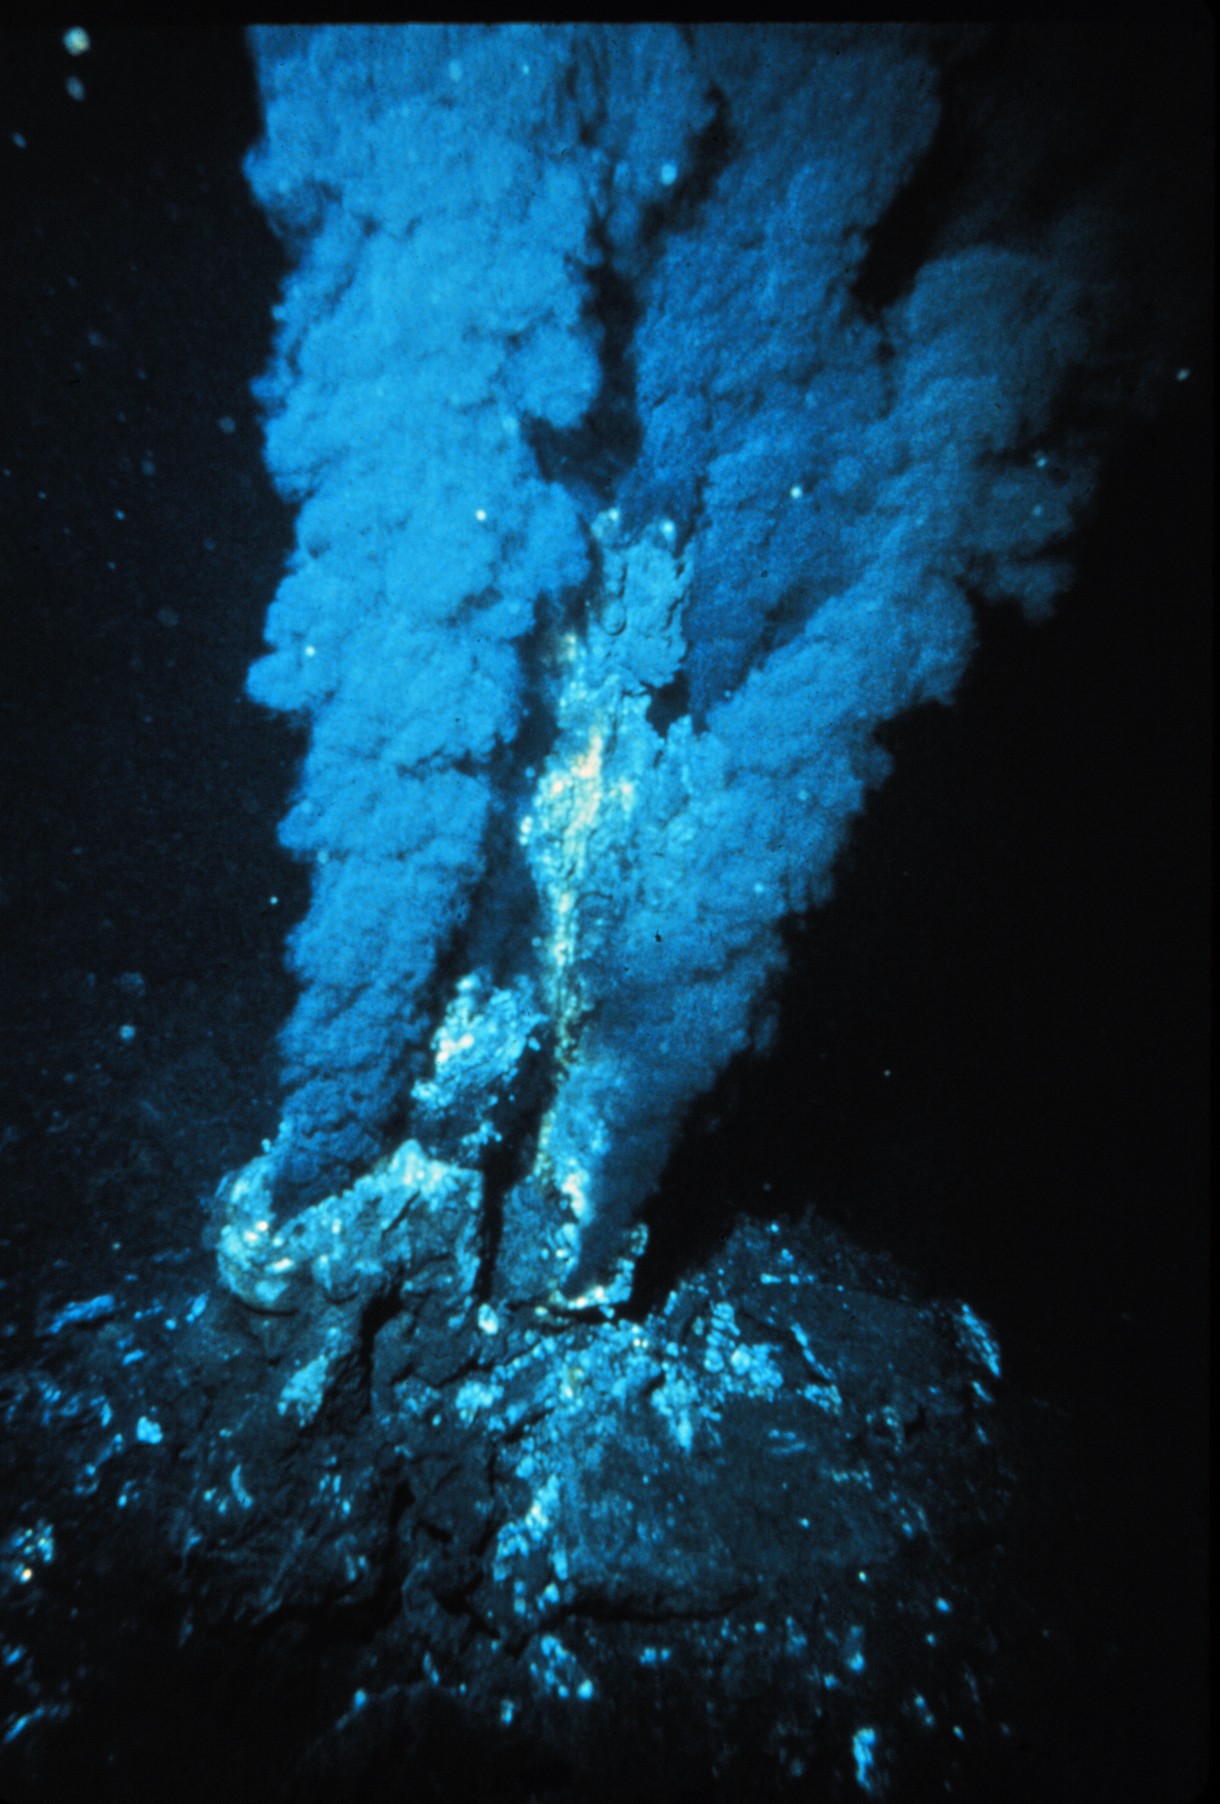 Superkritická kapalina v přírodě podmořské vulkány jsou běžným prvkem oceánského dna, jejich přítomnost se projevuje výbuchy páry a narušováním skalisek u hladiny moře mnohé leží ve velké hloubce